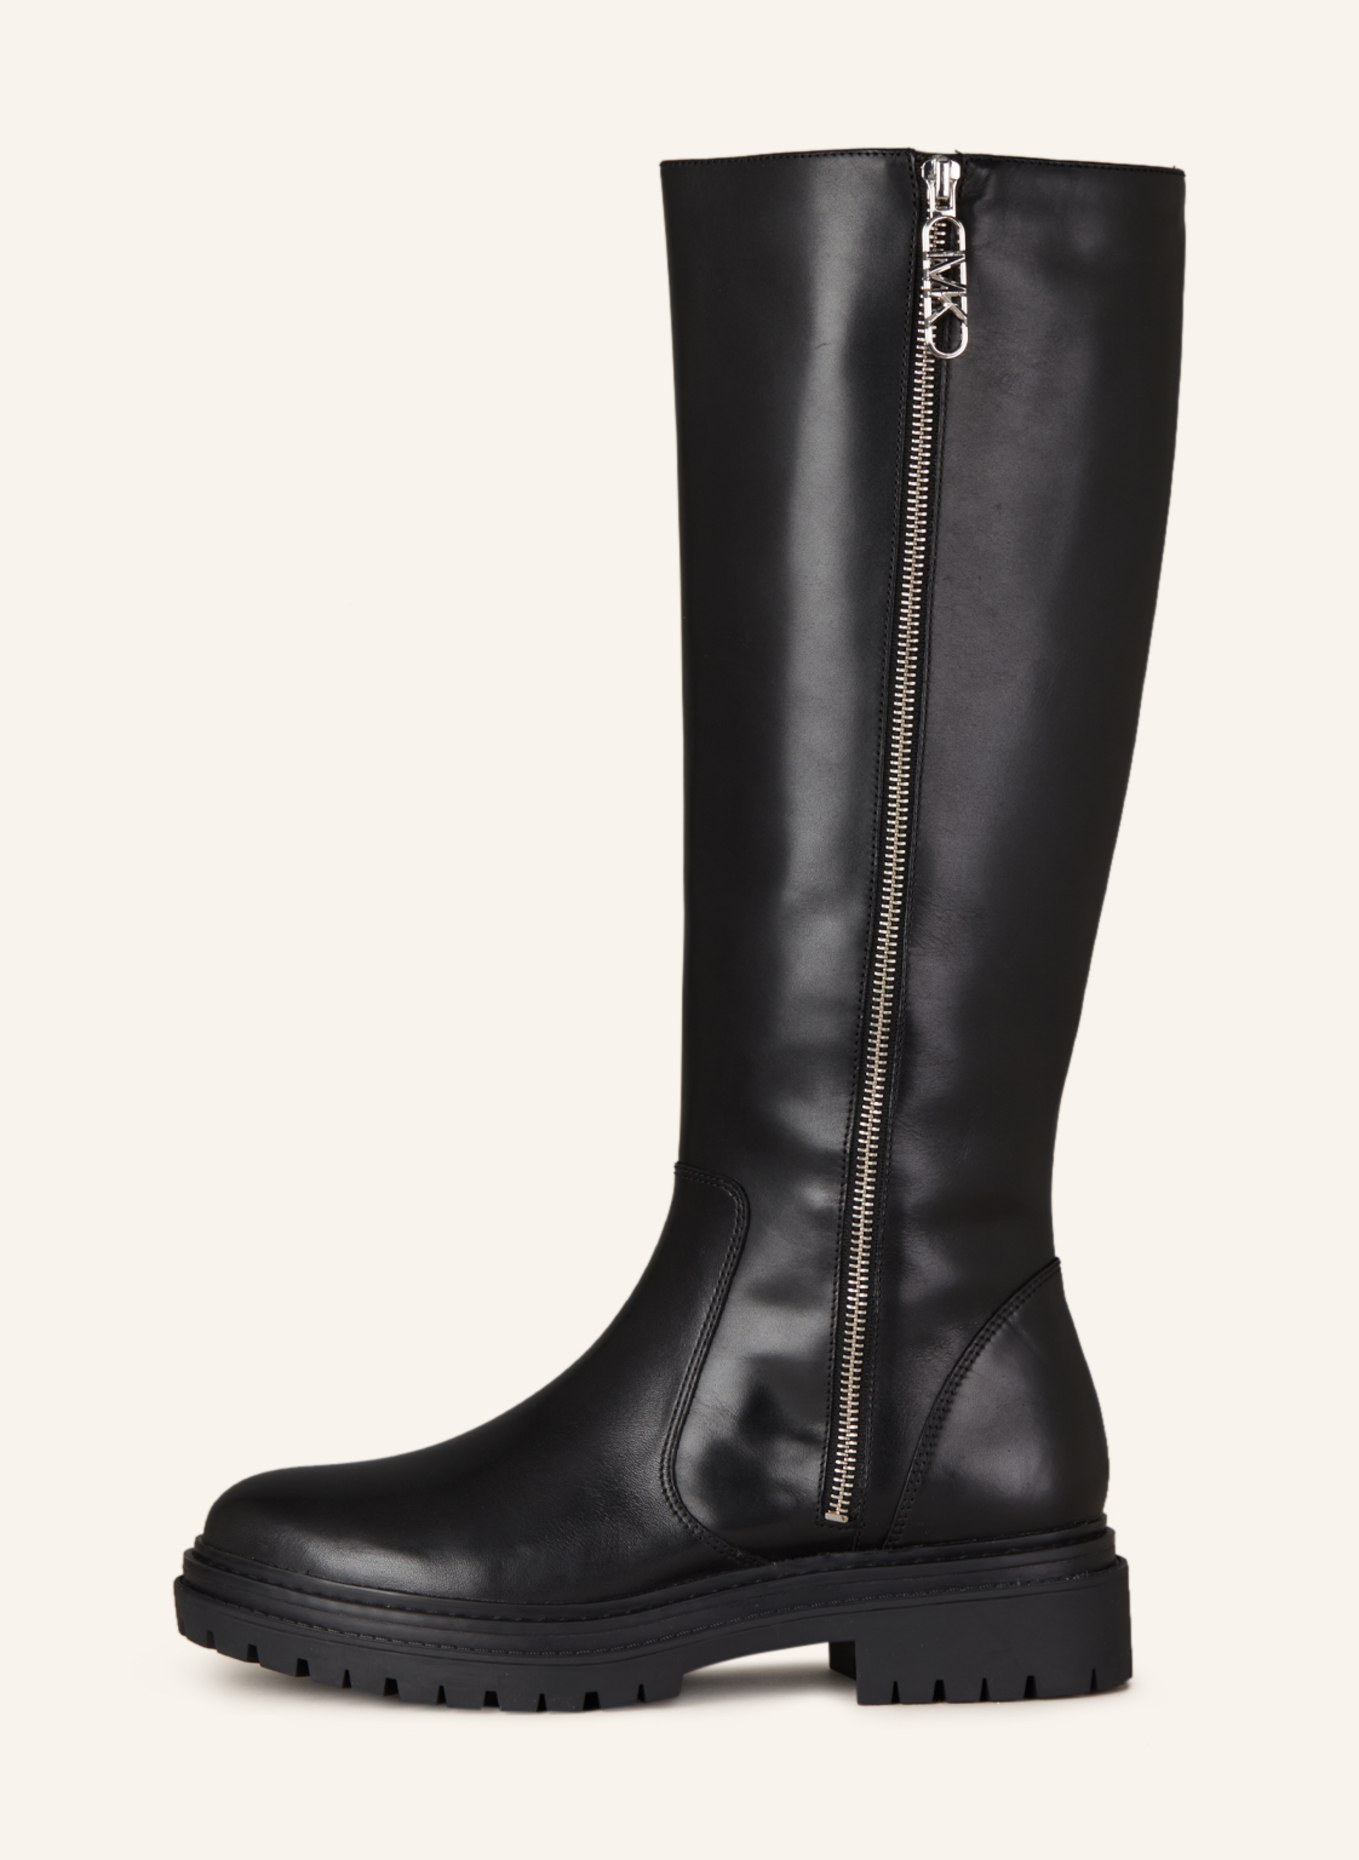 MICHAEL KORS Boots REGAN, Color: 001 BLACK (Image 4)